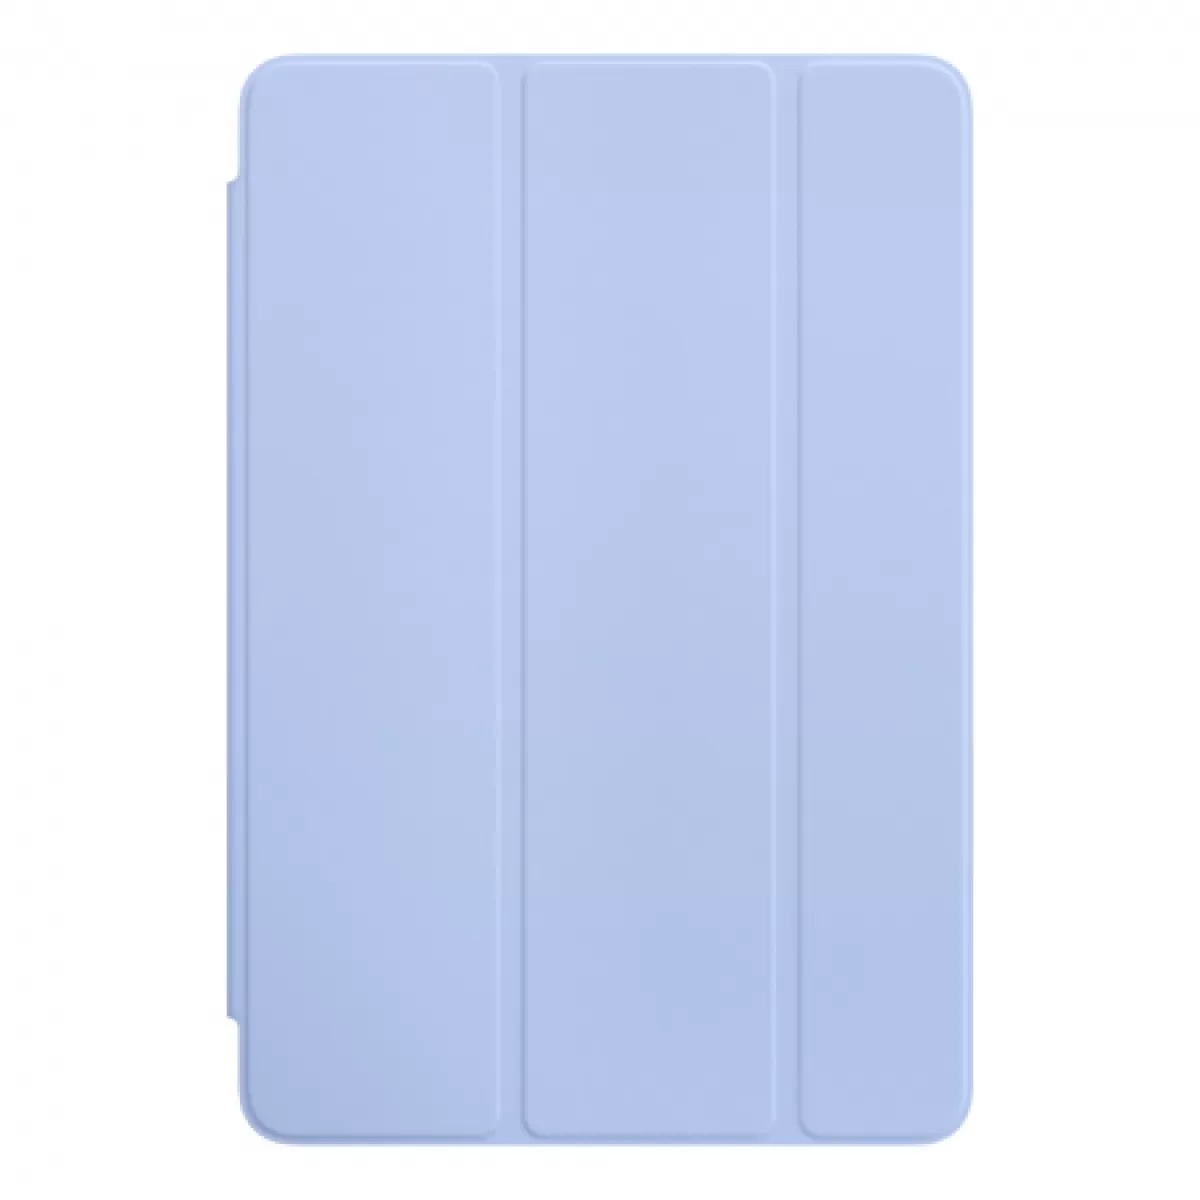 Apple iPad mini 4 Smart Cover Lilac